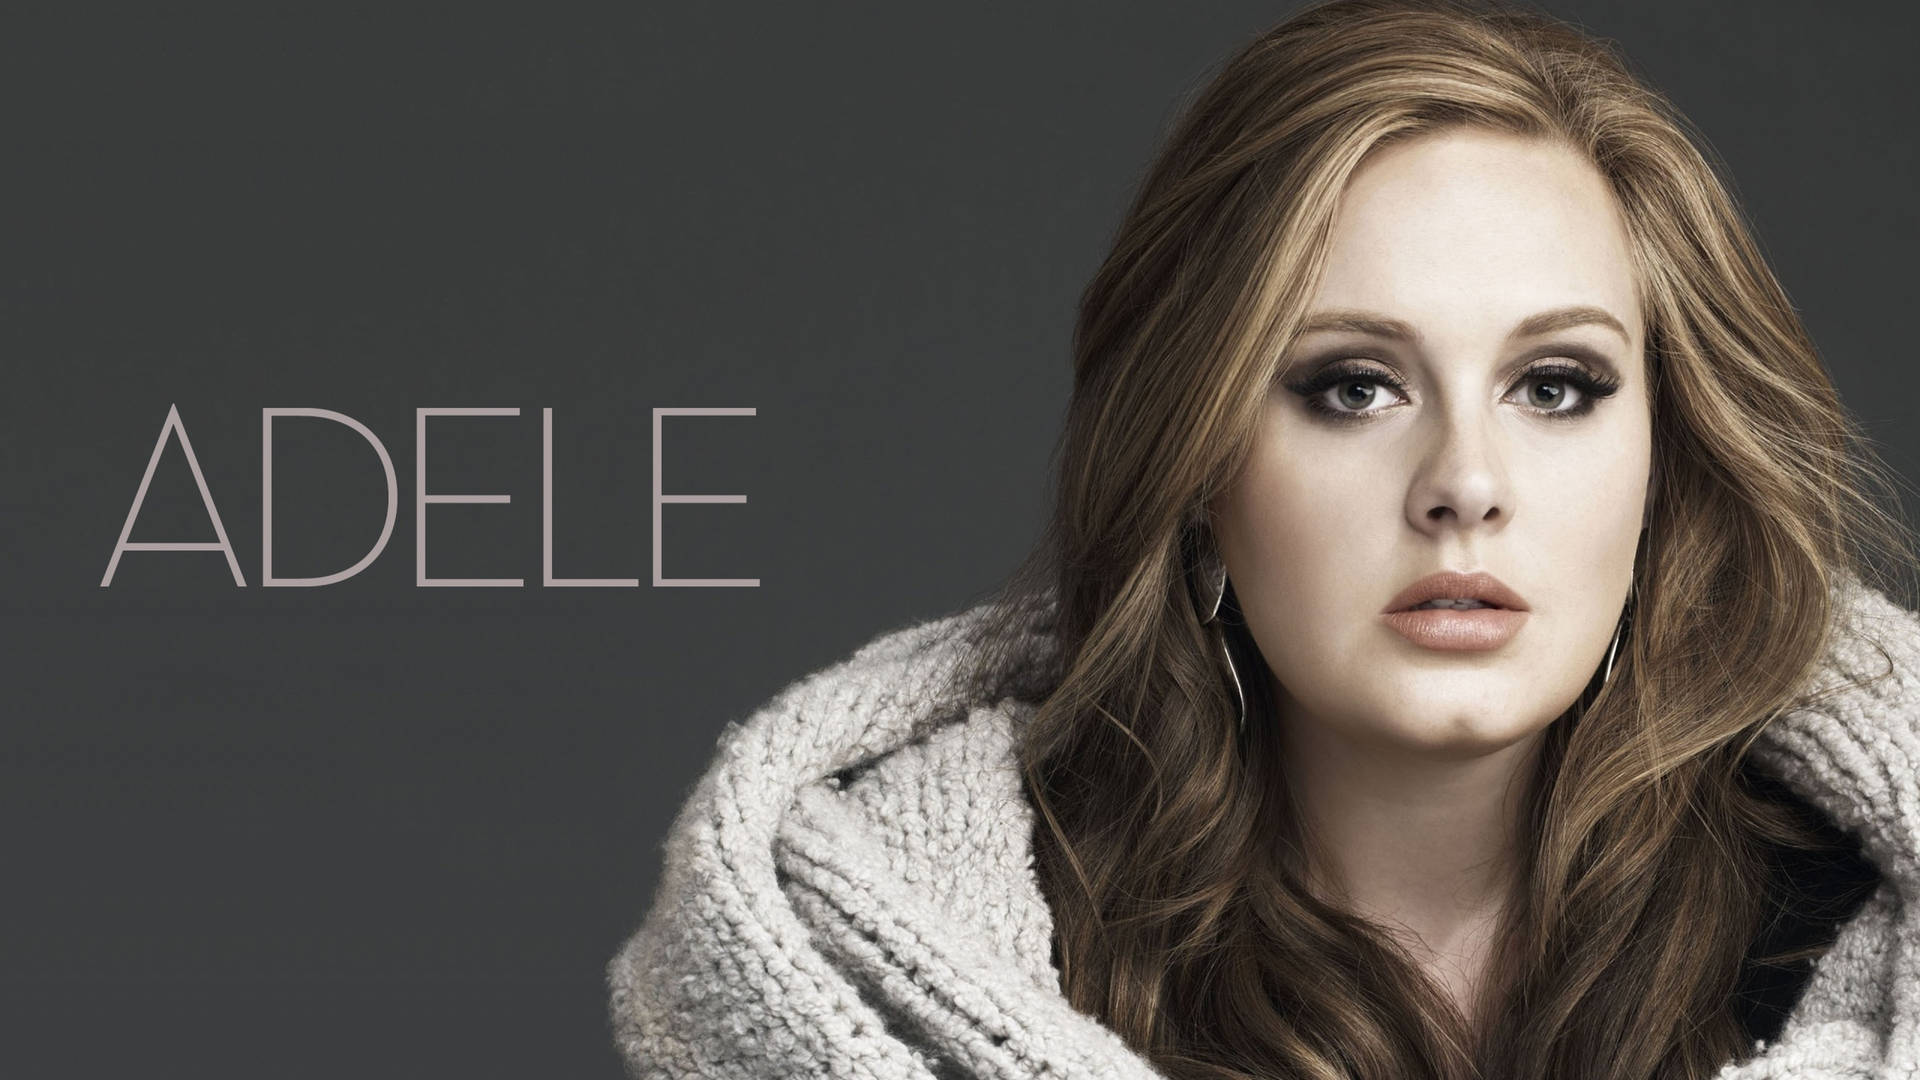 Adele 25 Album Photoshoot Background